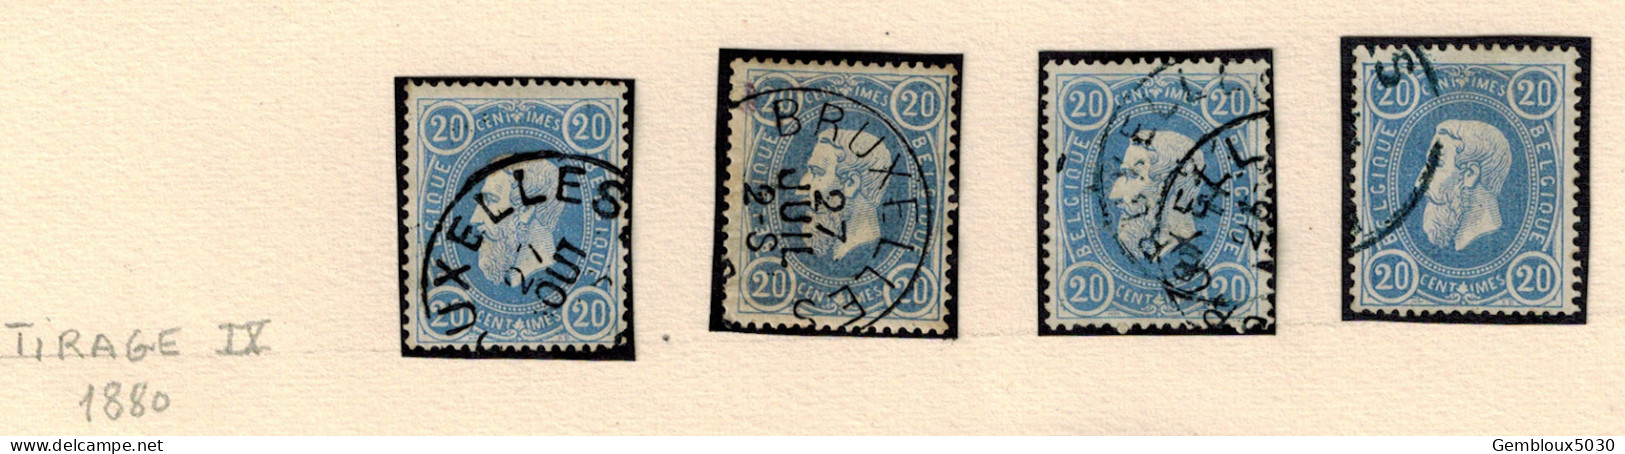 N° 31 (4x) 1880 Tirage IX - Lots & Kiloware (max. 999 Stück)